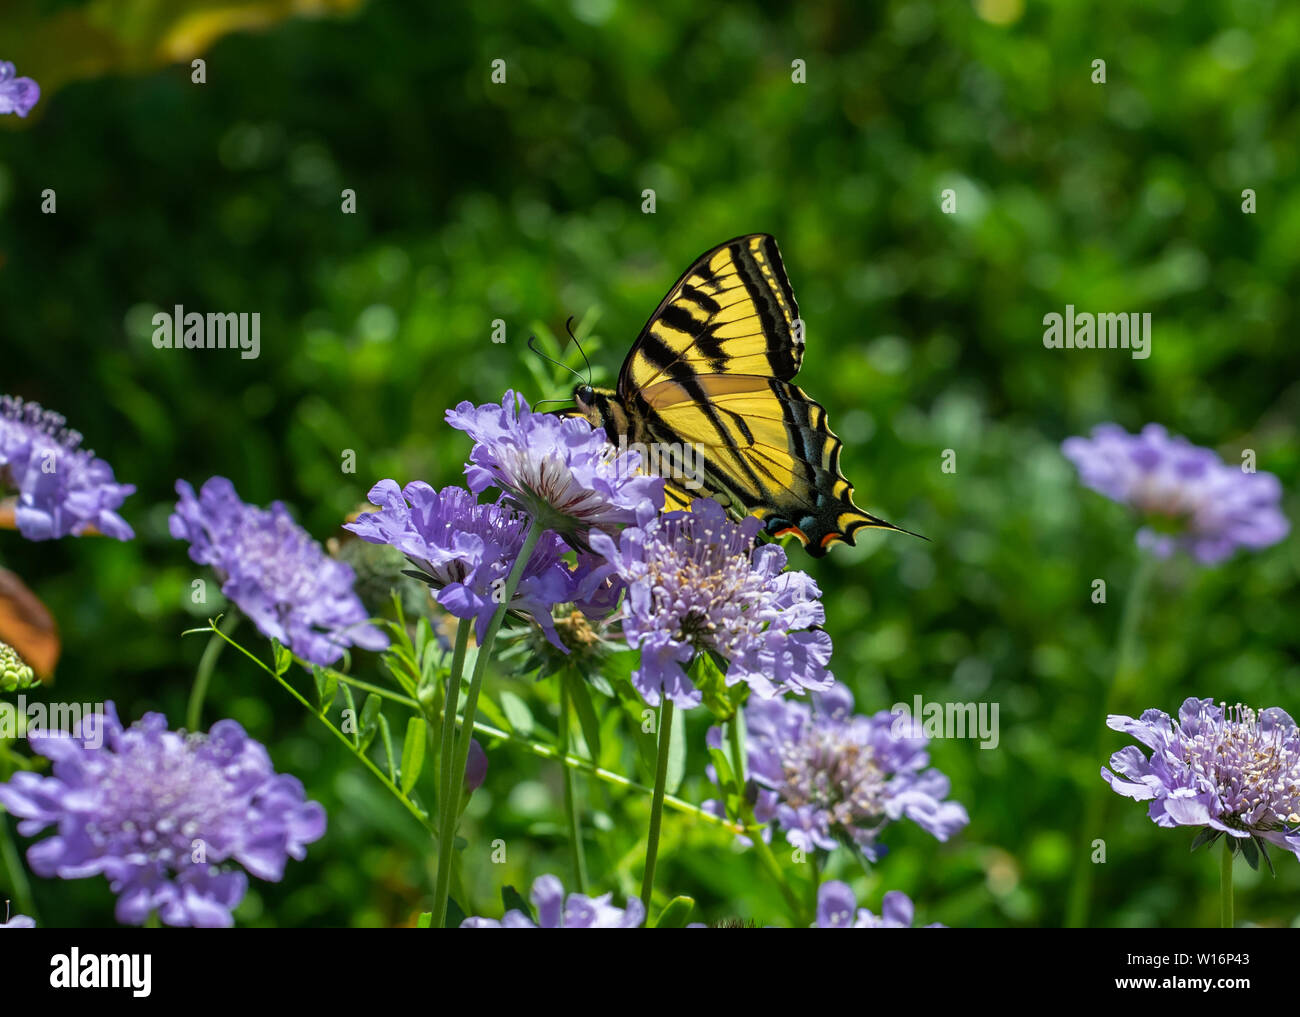 Papillon, tigre de l'Ouest Papilio rutulus) nectar sur les fleurs pourpre Pincushion (Scabiosa), vue ventrale avec proboscis visible. Banque D'Images